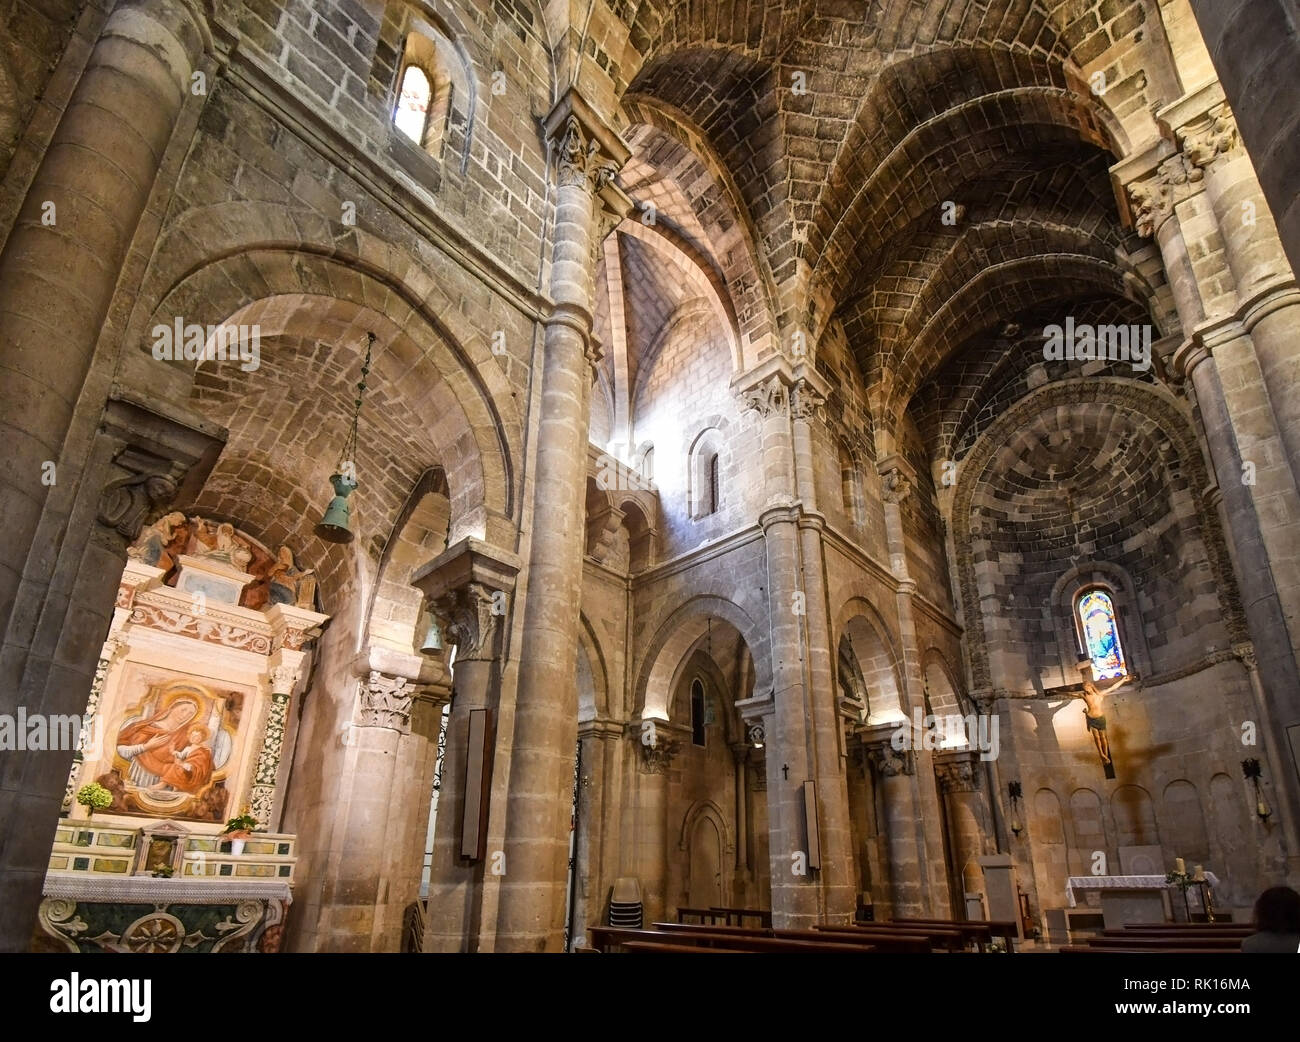 La nave interior y altar representando la crucifixión de Jesucristo iluminada por vidrieras en la iglesia parroquial de San Giovanni Battista en Mater Foto de stock